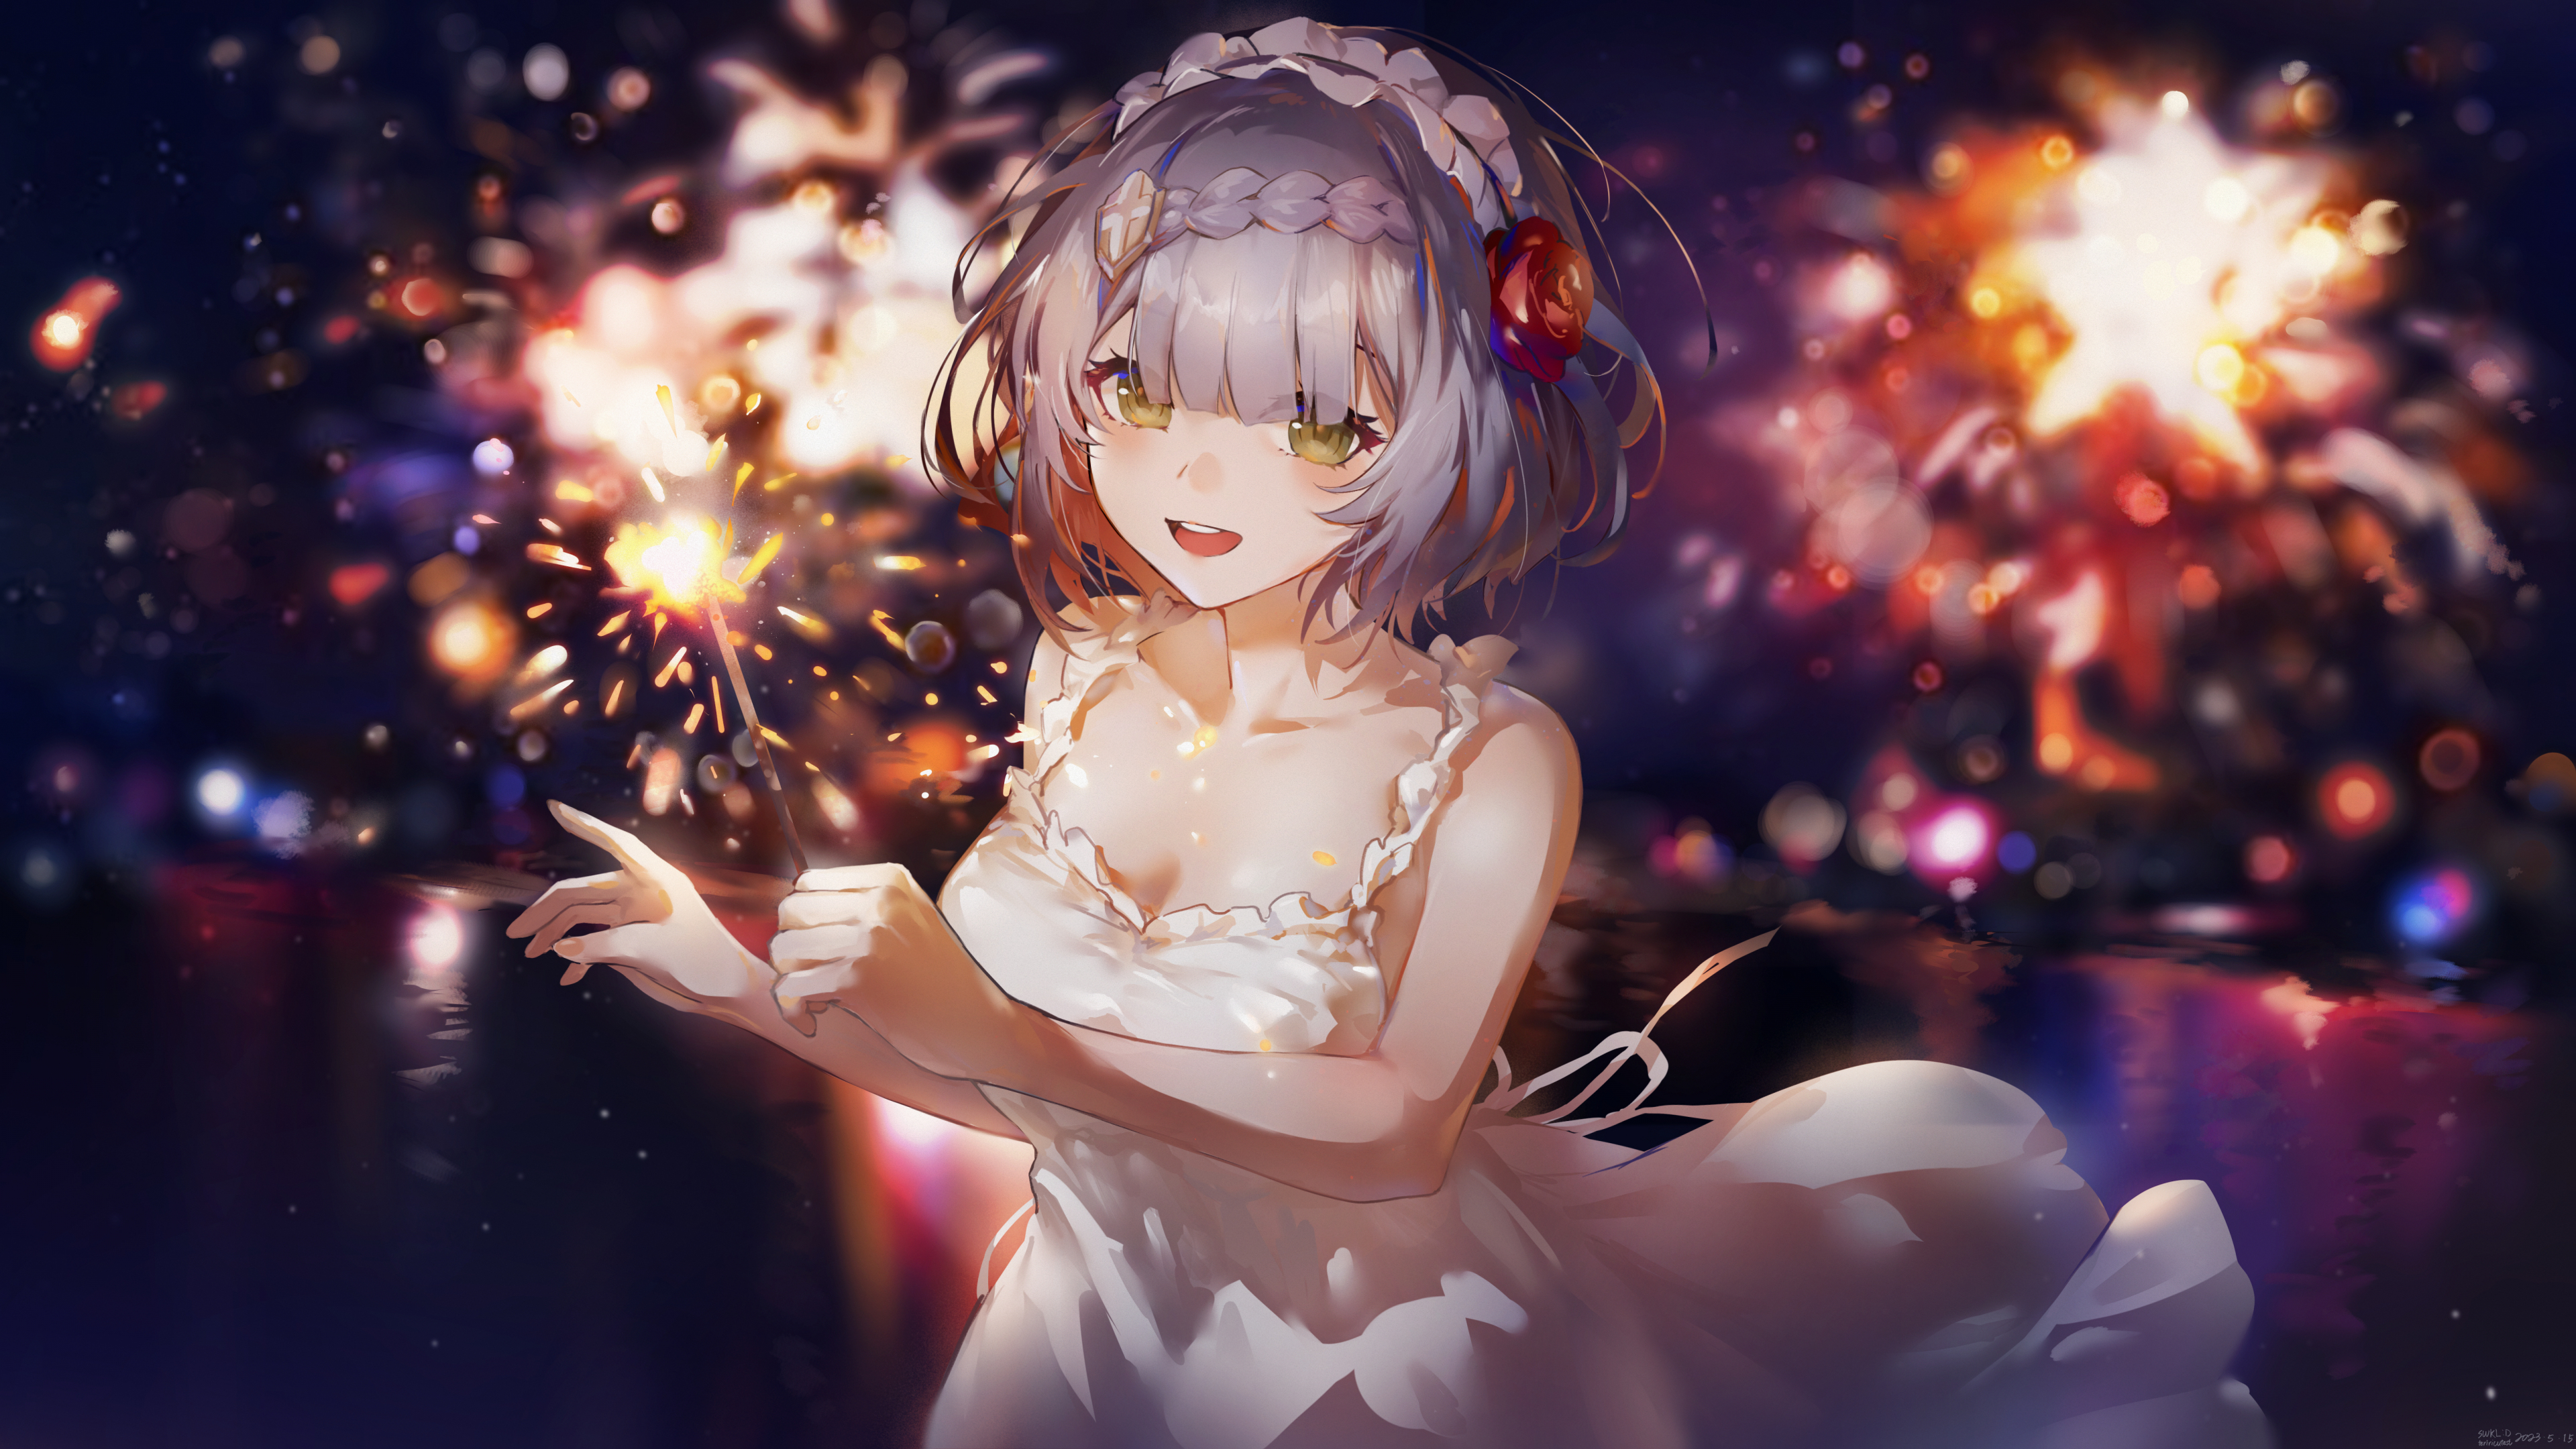 White dress, cute anime girl, art, 3840x2160 wallpaper